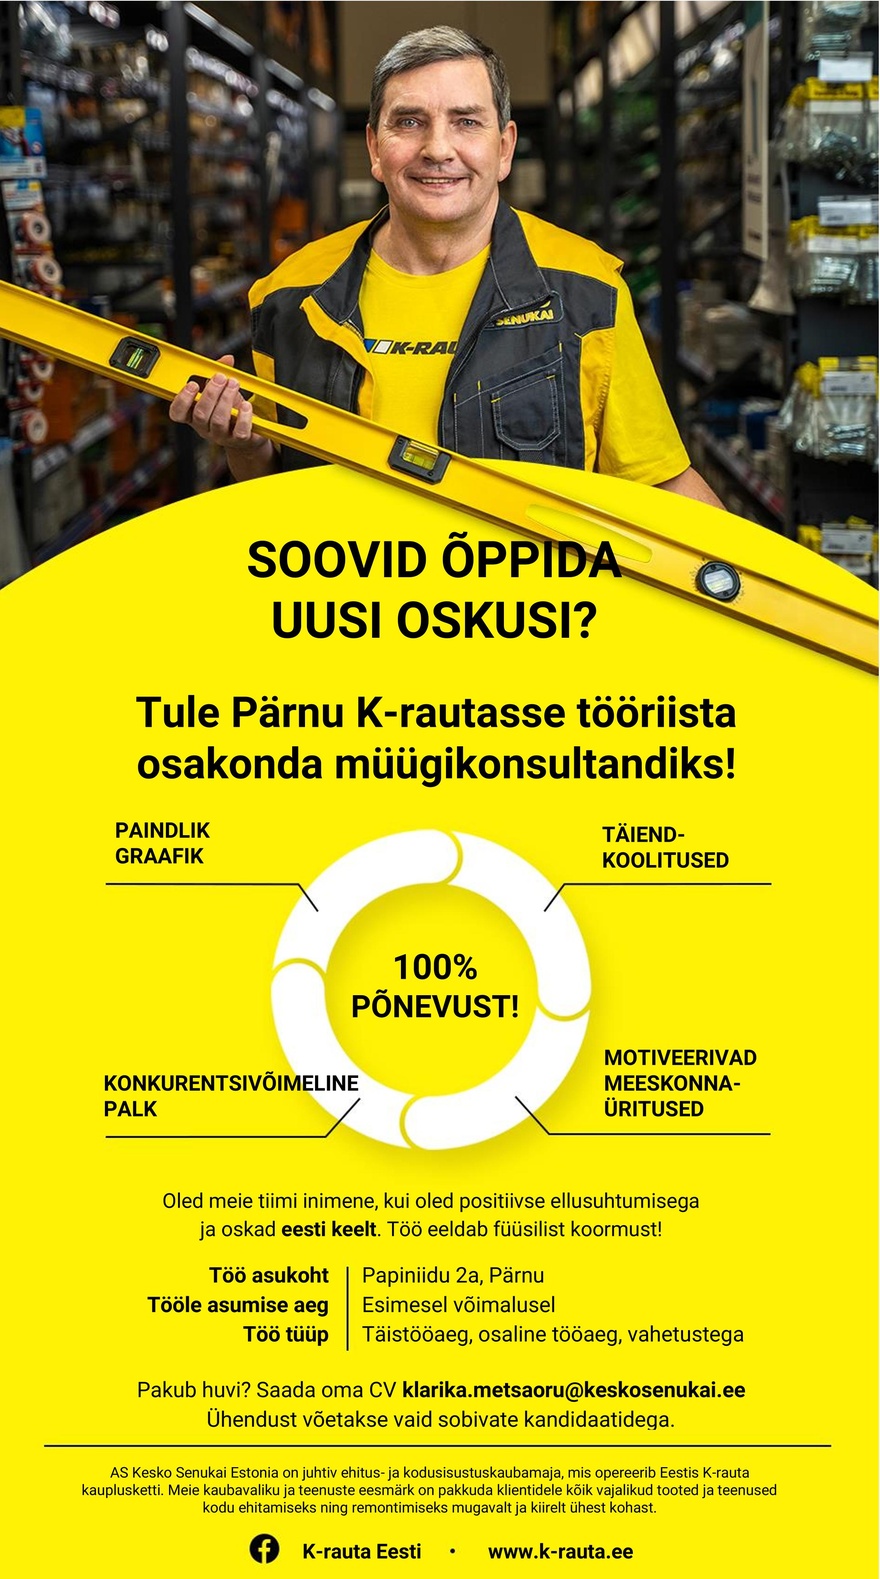 Kesko Senukai Estonia AS Müügikonsultant Pärnu K-rauta tööriista osakonda